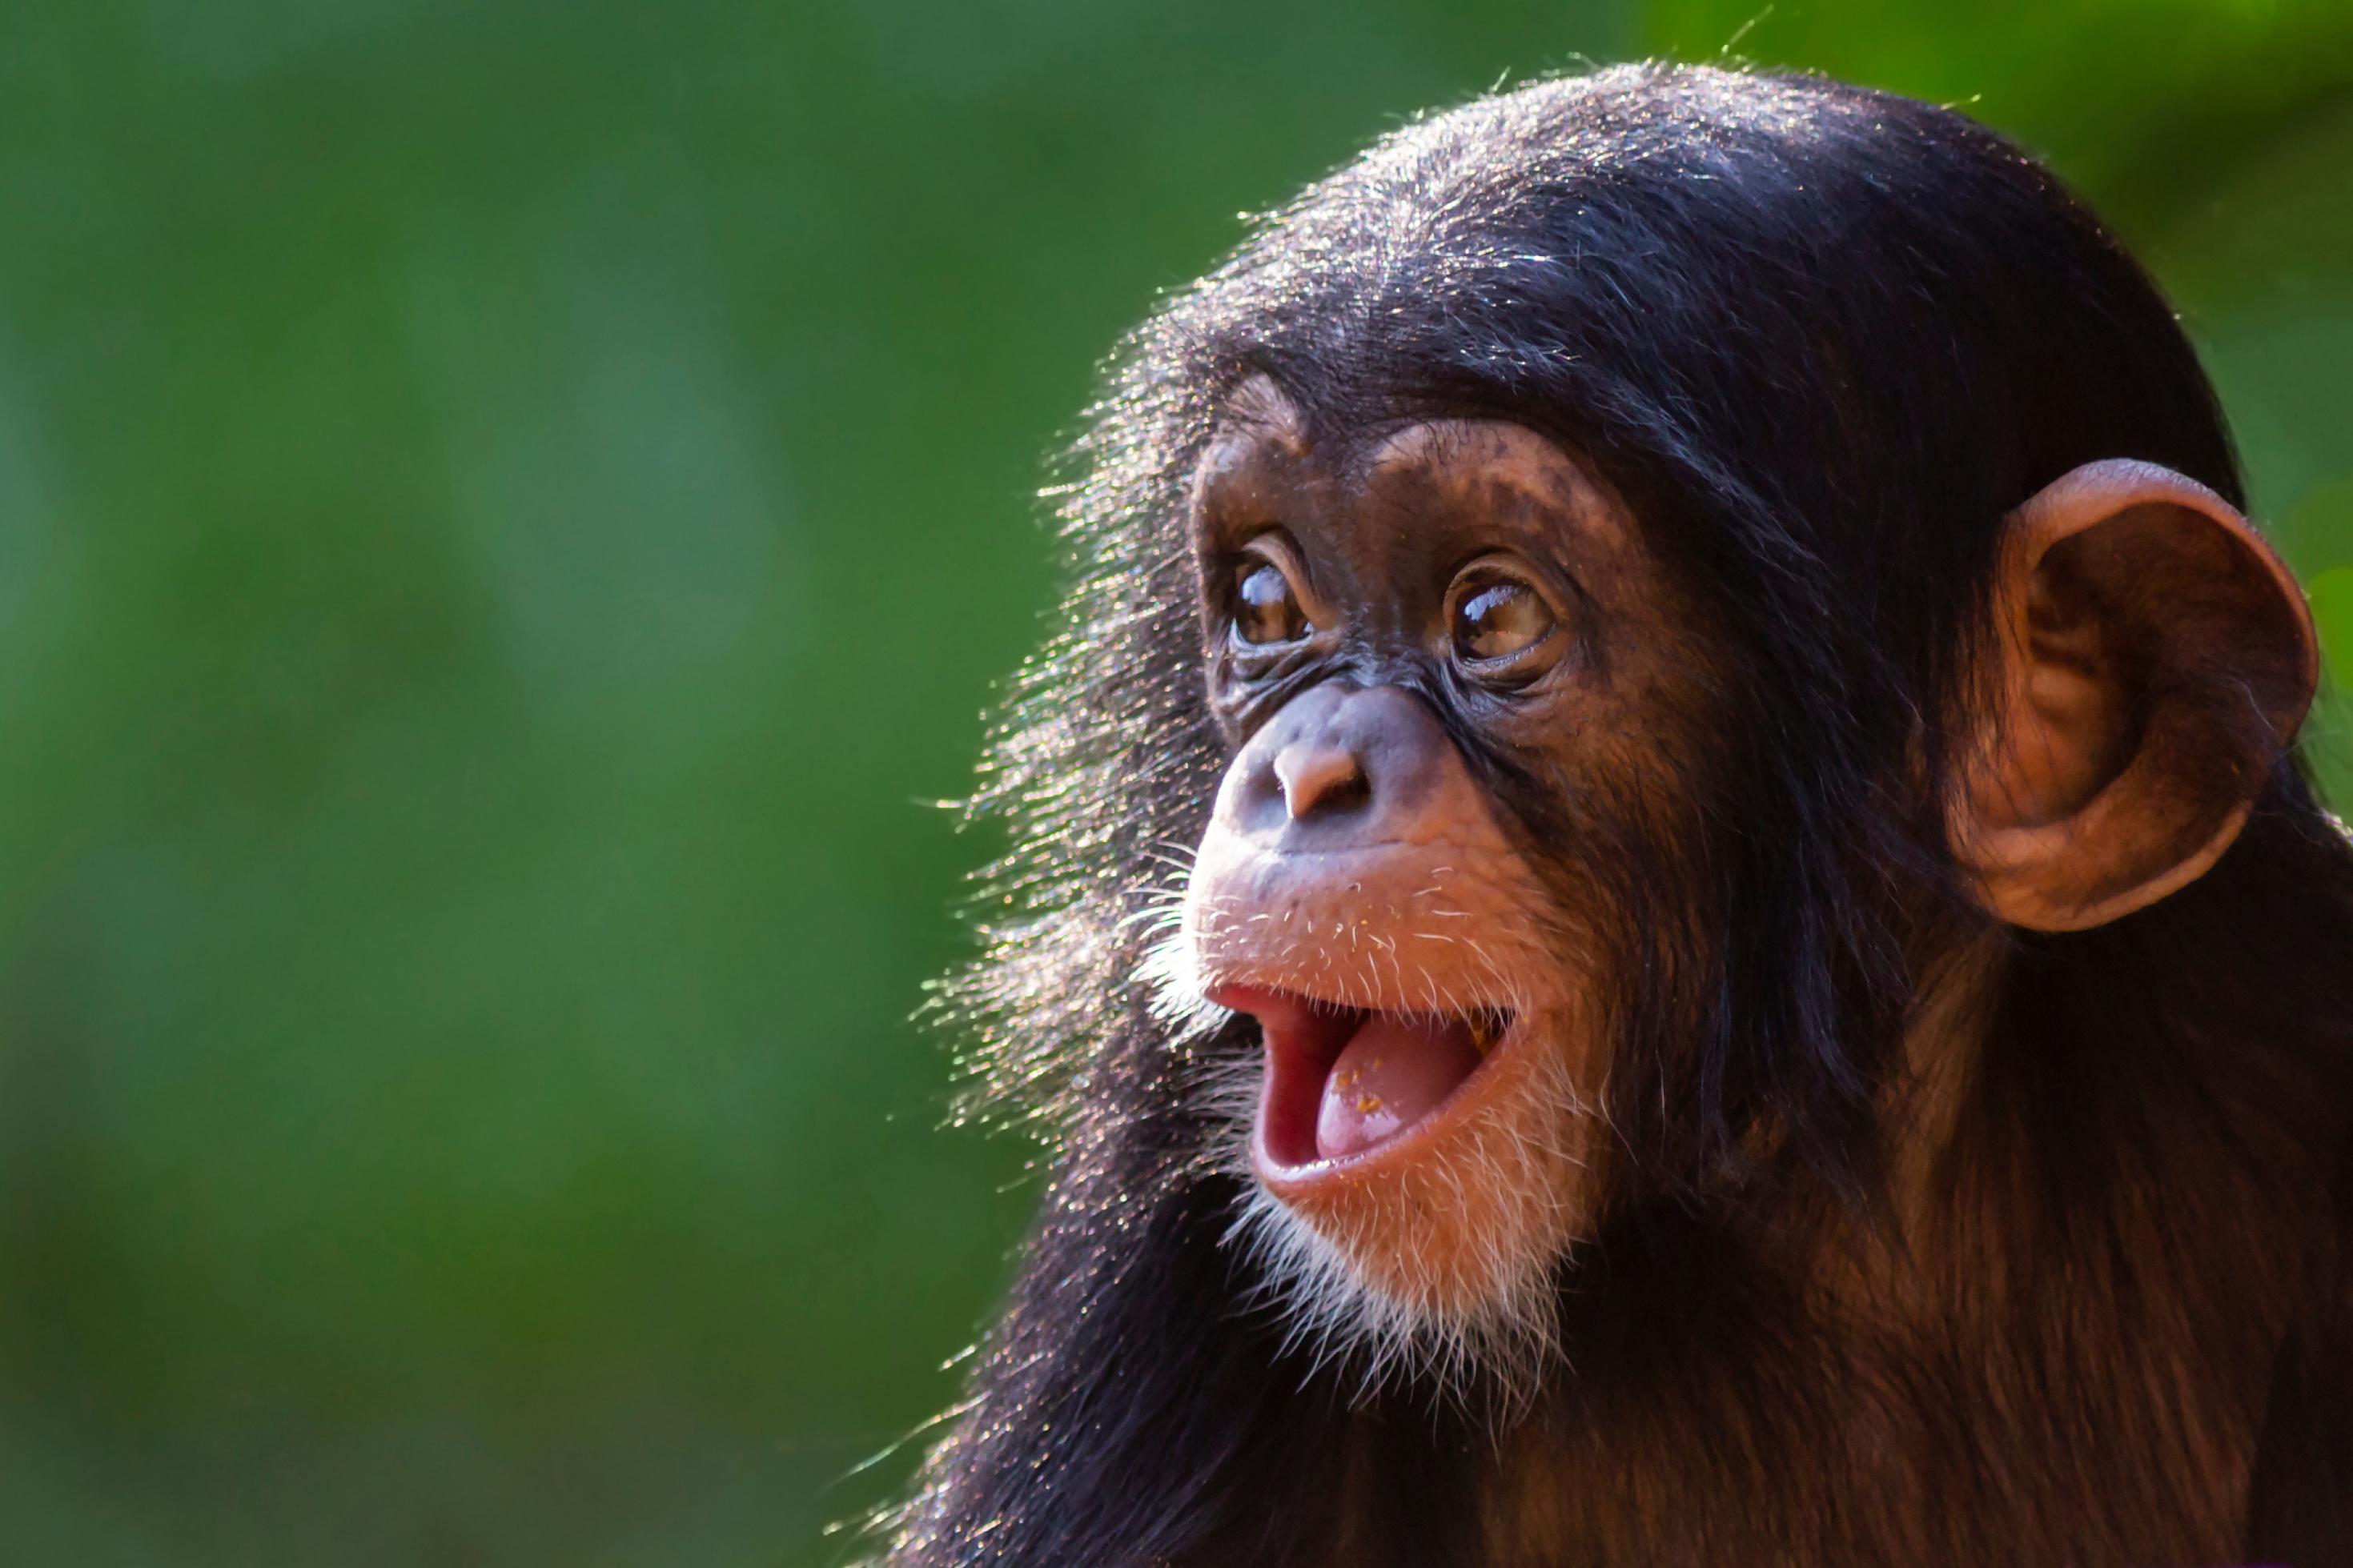 Vor grünem, unscharfem Hintergrund ist der Kopf eines Schimpansen-Kindes zu sehen. Es hat den Mund geöffnet und schaut nach links, mit einem freudig oder überrascht wirkenden Gesichtsausdruck.